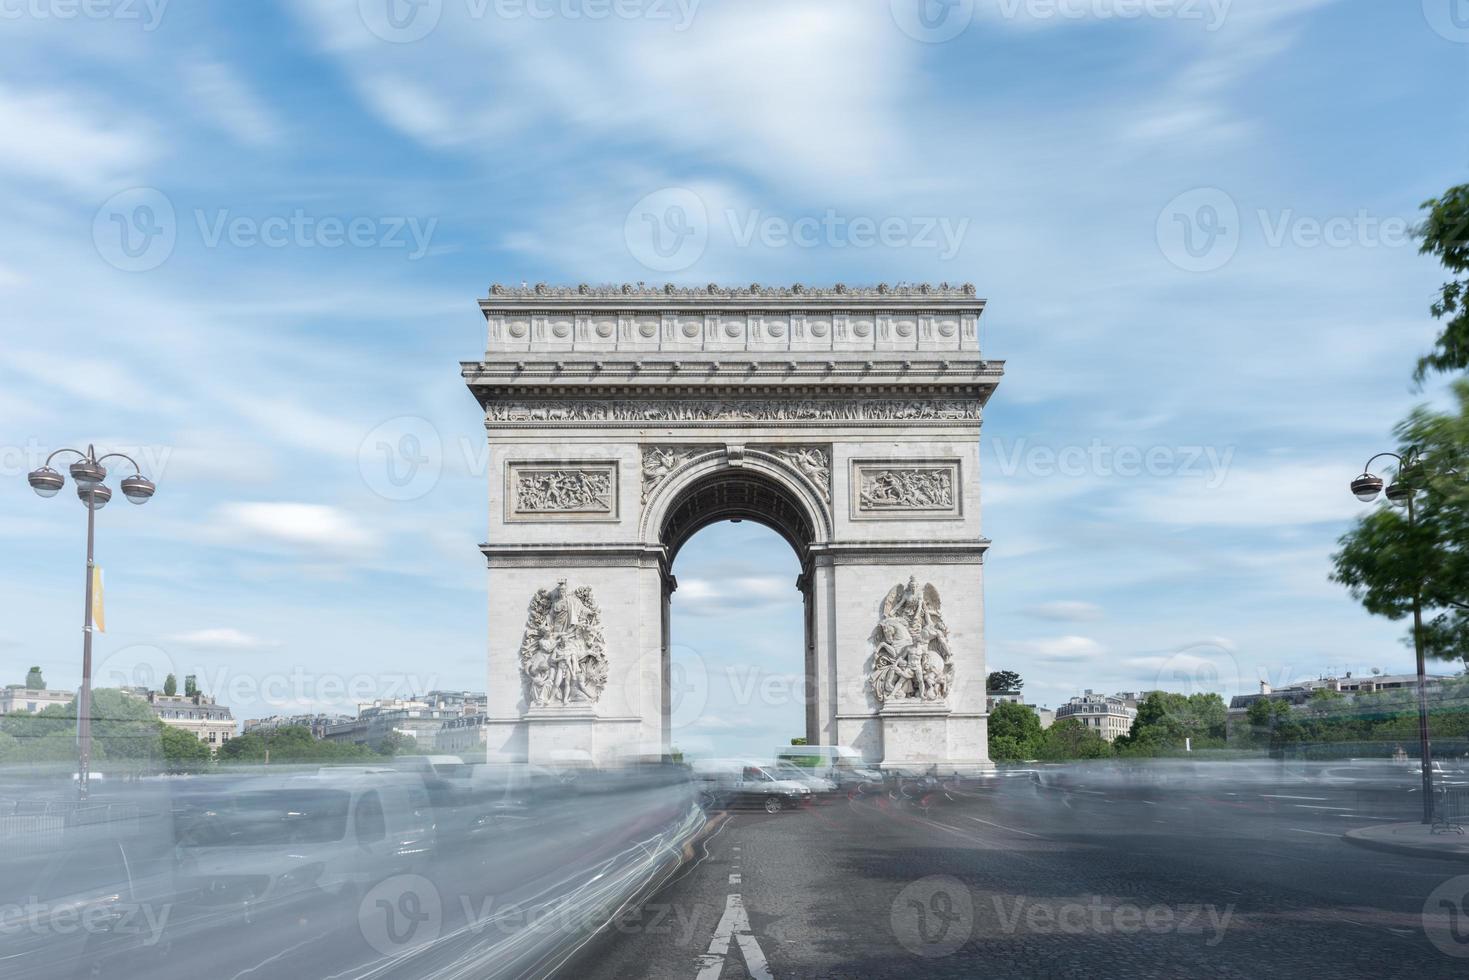 der arc de triomphe de l'etoile ist eines der berühmtesten monumente in paris und steht am westlichen ende der champs-elysees im zentrum des place charles de gaulle. foto